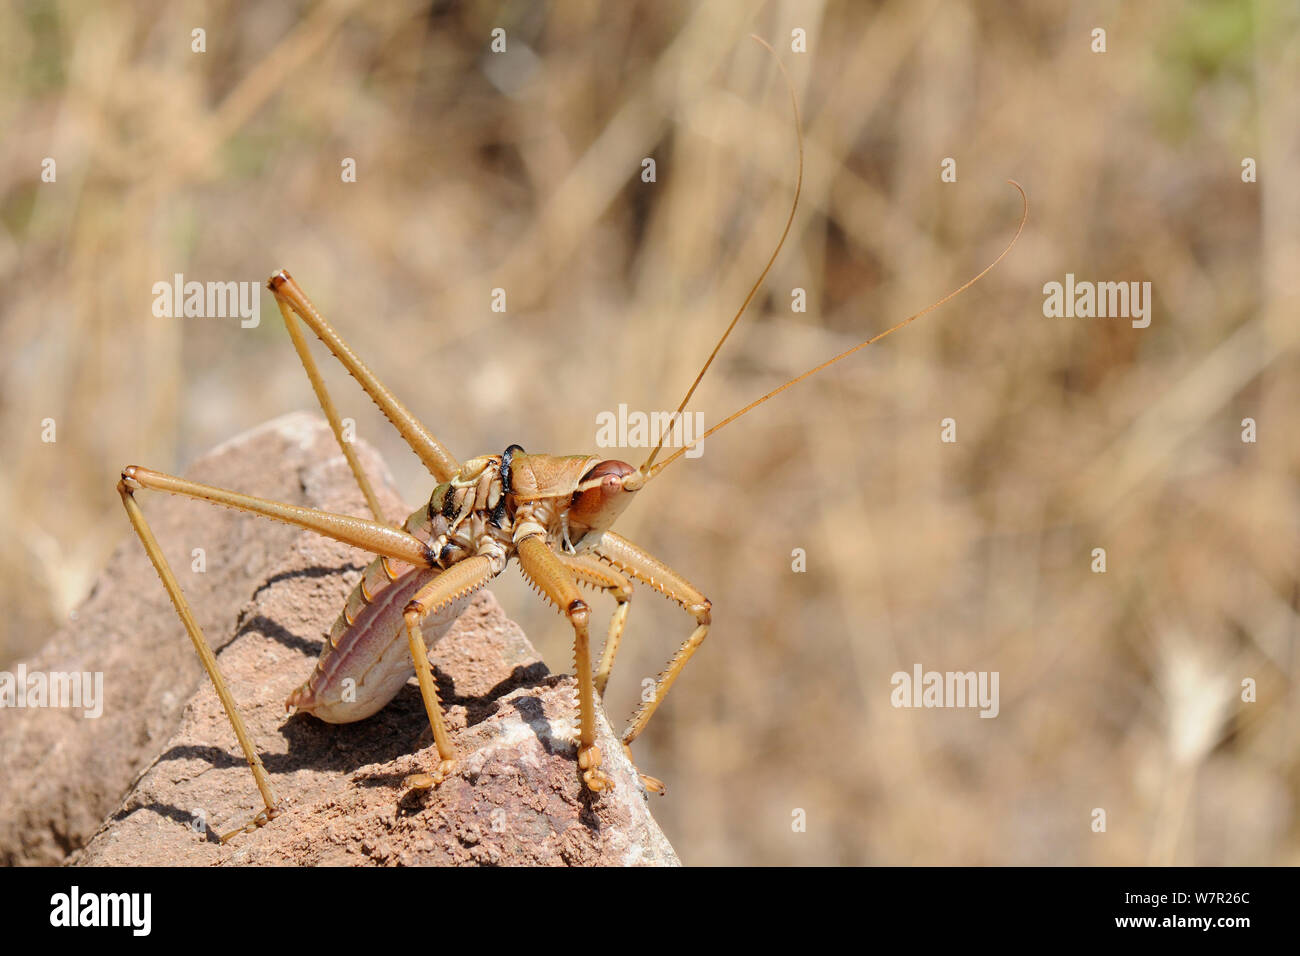 Le sciage des Balkans (Saga natoliae Cricket), le plus important d'insectes prédateurs en Europe. Samos en Grèce, en juillet. Banque D'Images